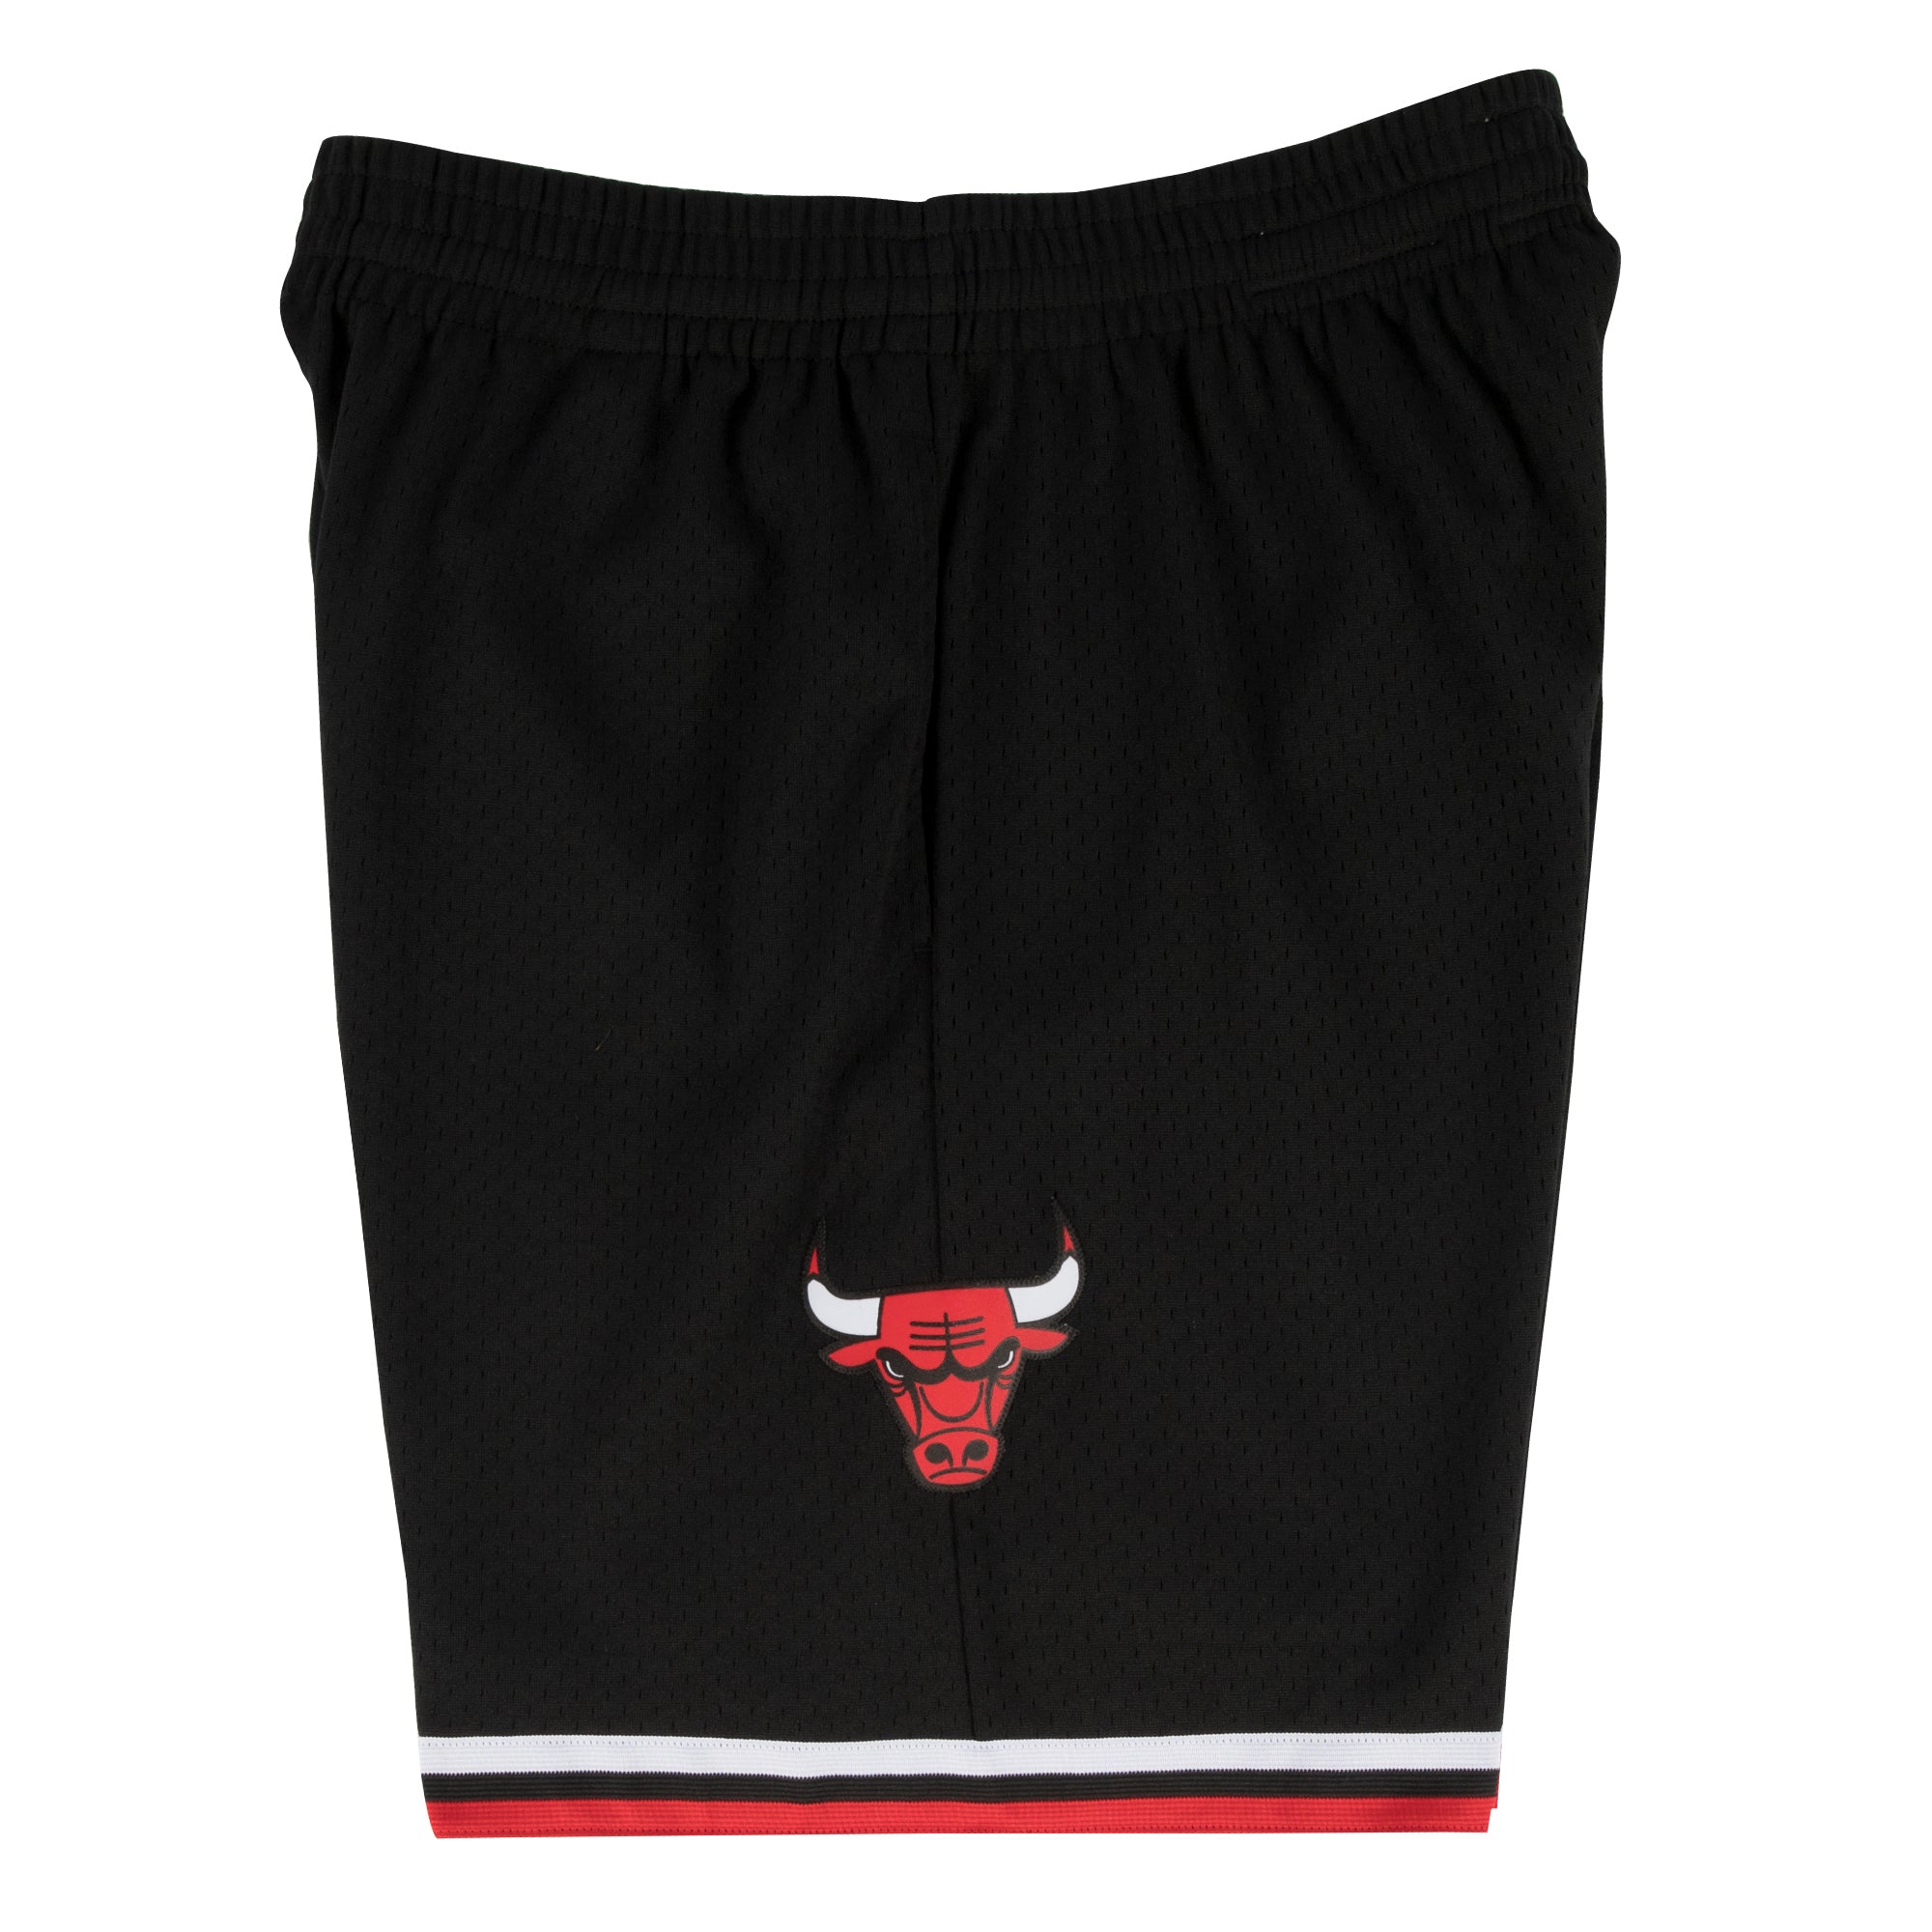 Swingman Shorts - Chicago Bulls Black